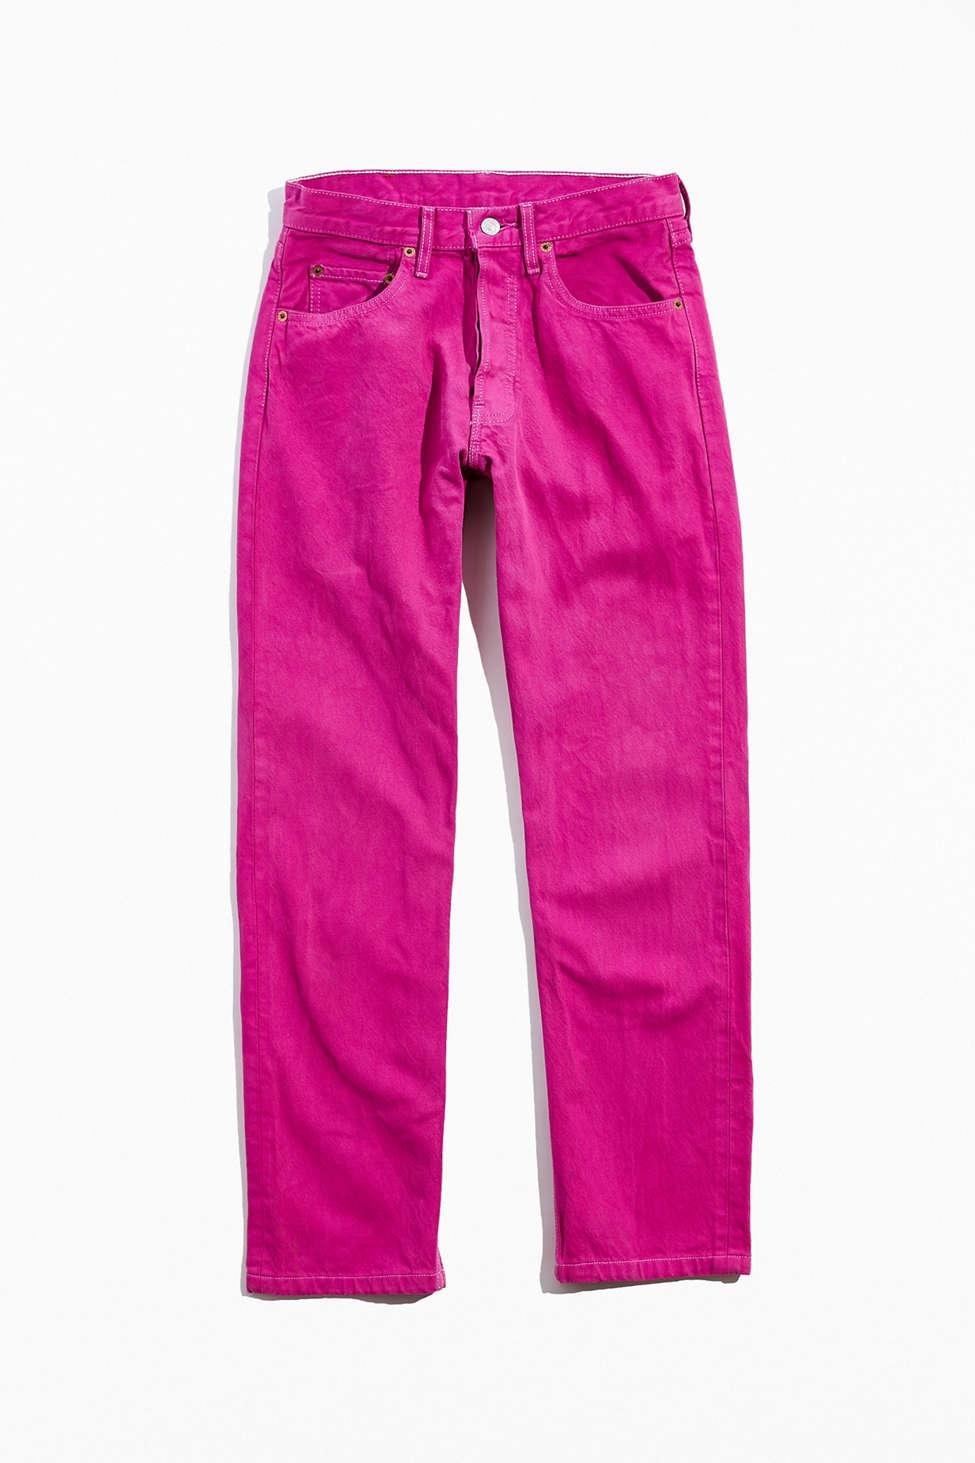 Levi's Vintage Levi's Hot Pink Jean for Men